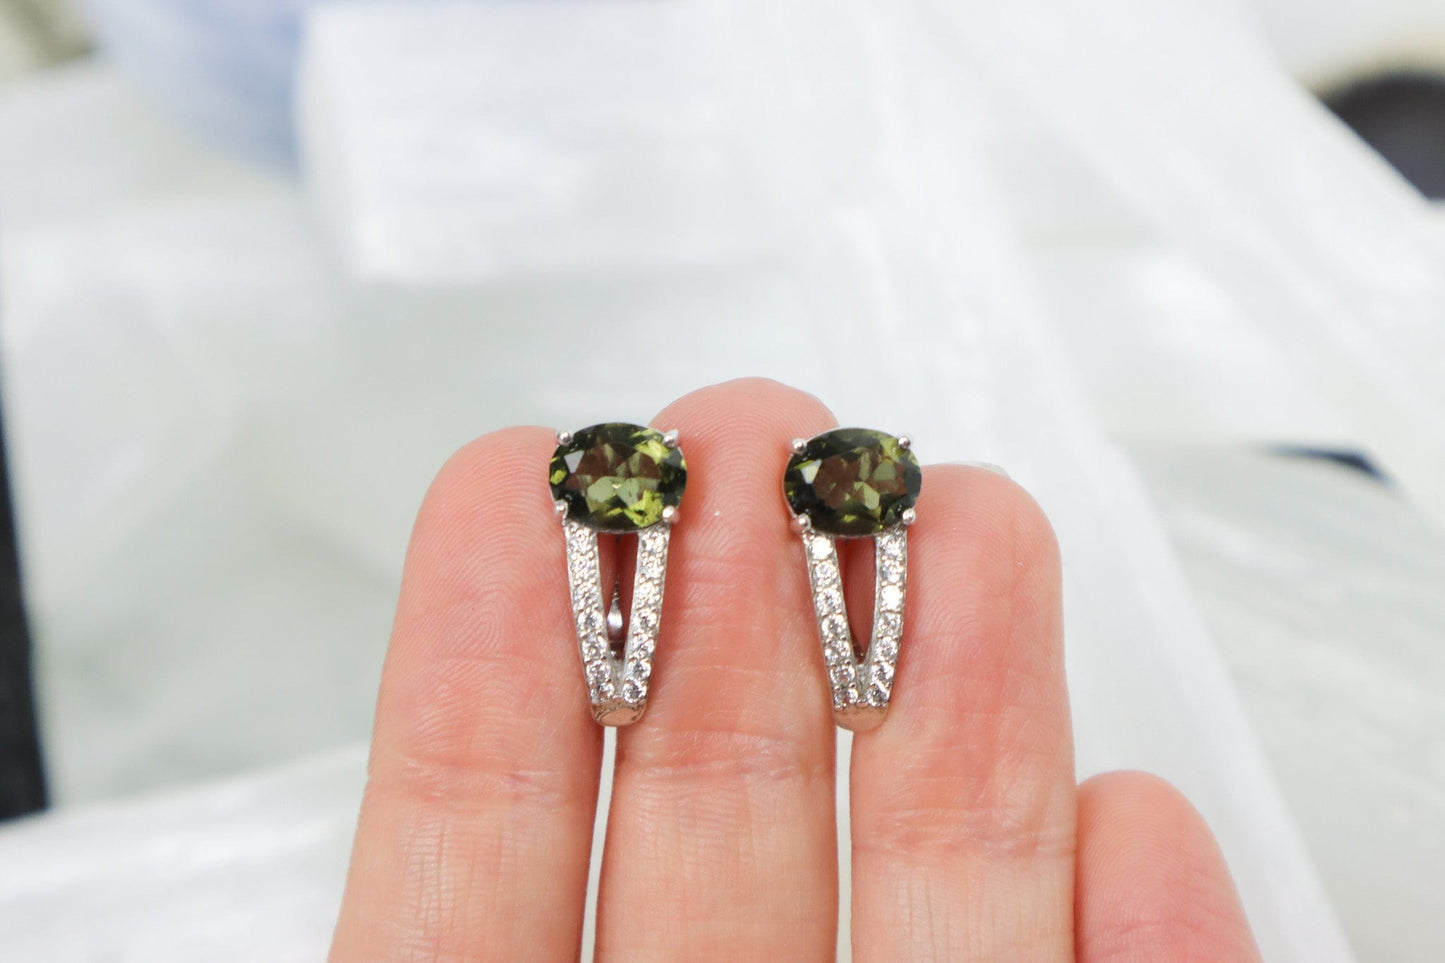 Moldavite Earrings 'Aurora' - The Stone of Transformation Earrings Cubic Zirconia Tali & Loz